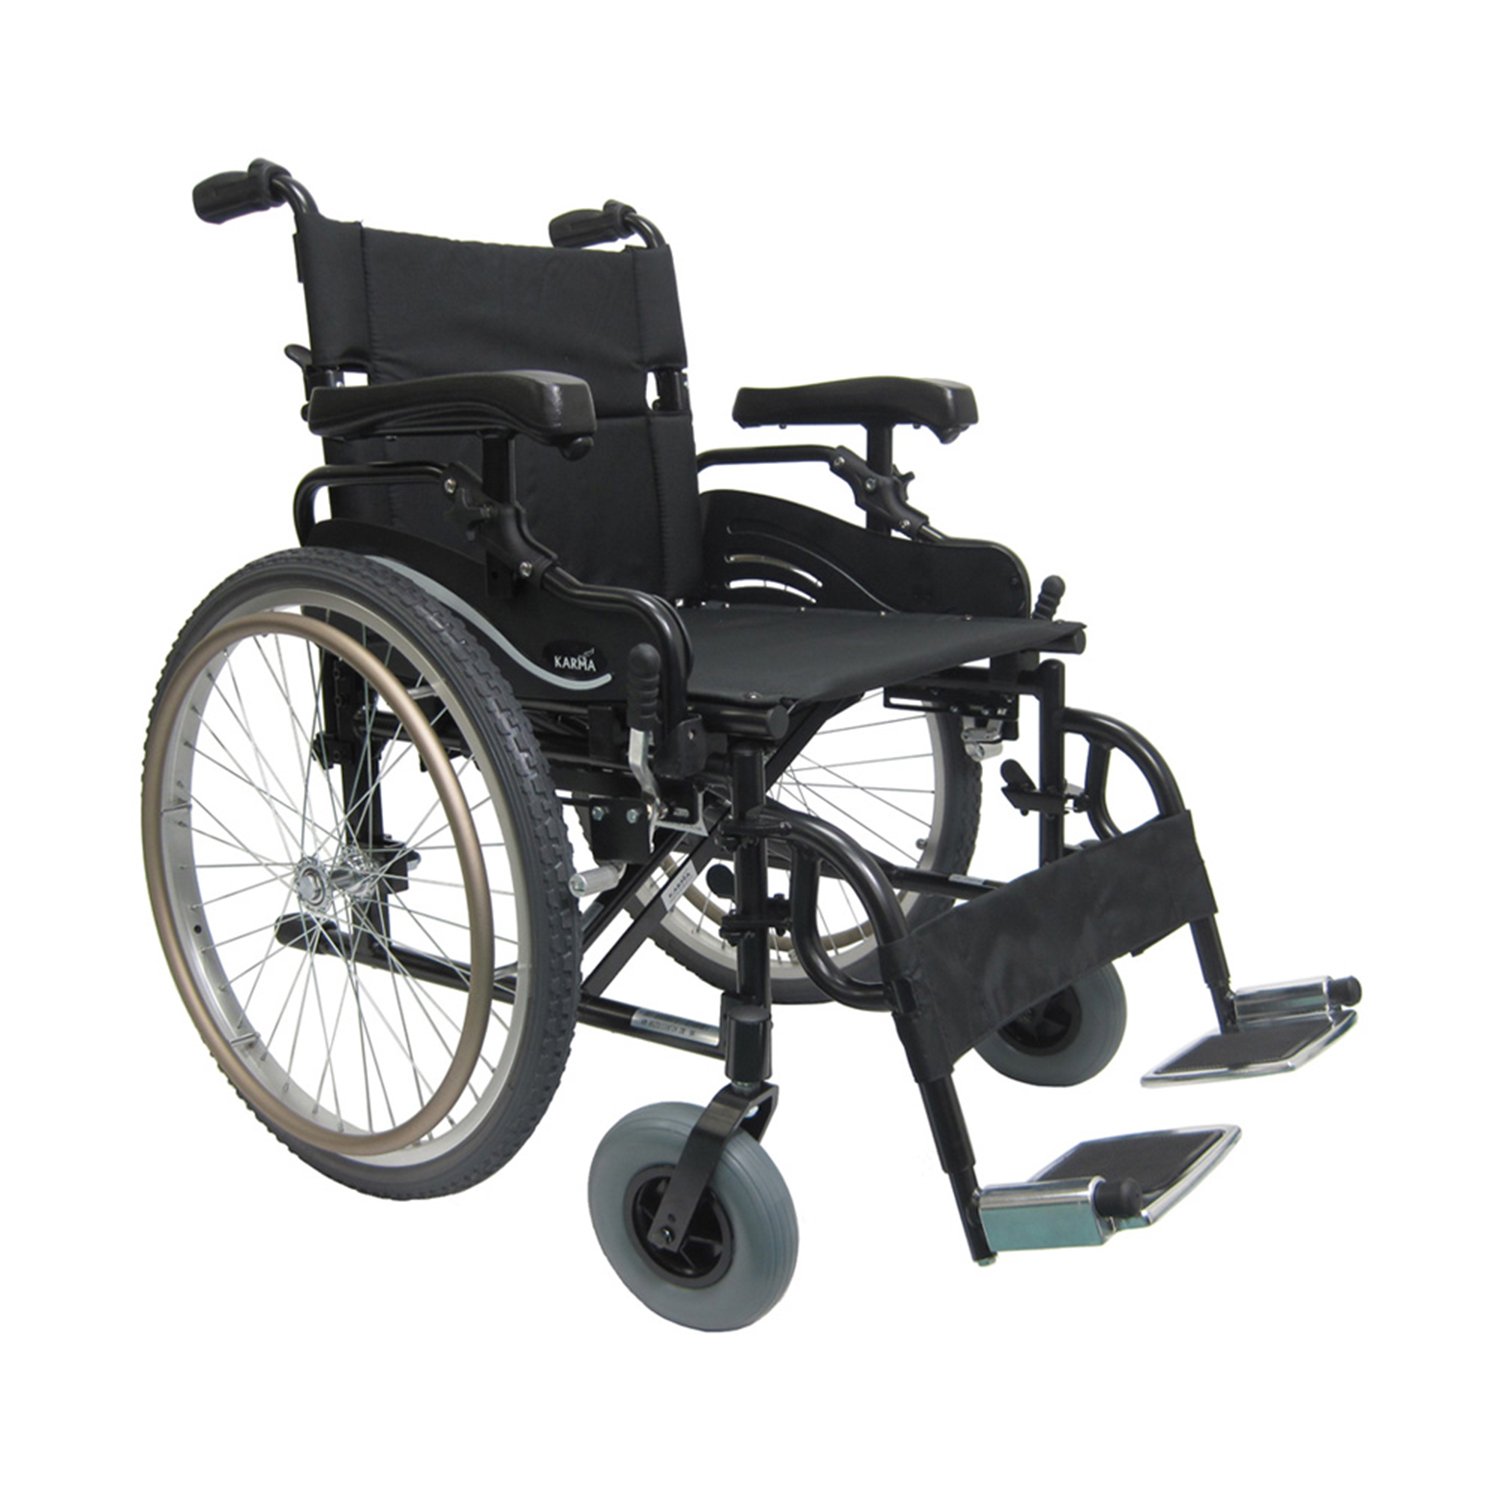 wide wheelchair